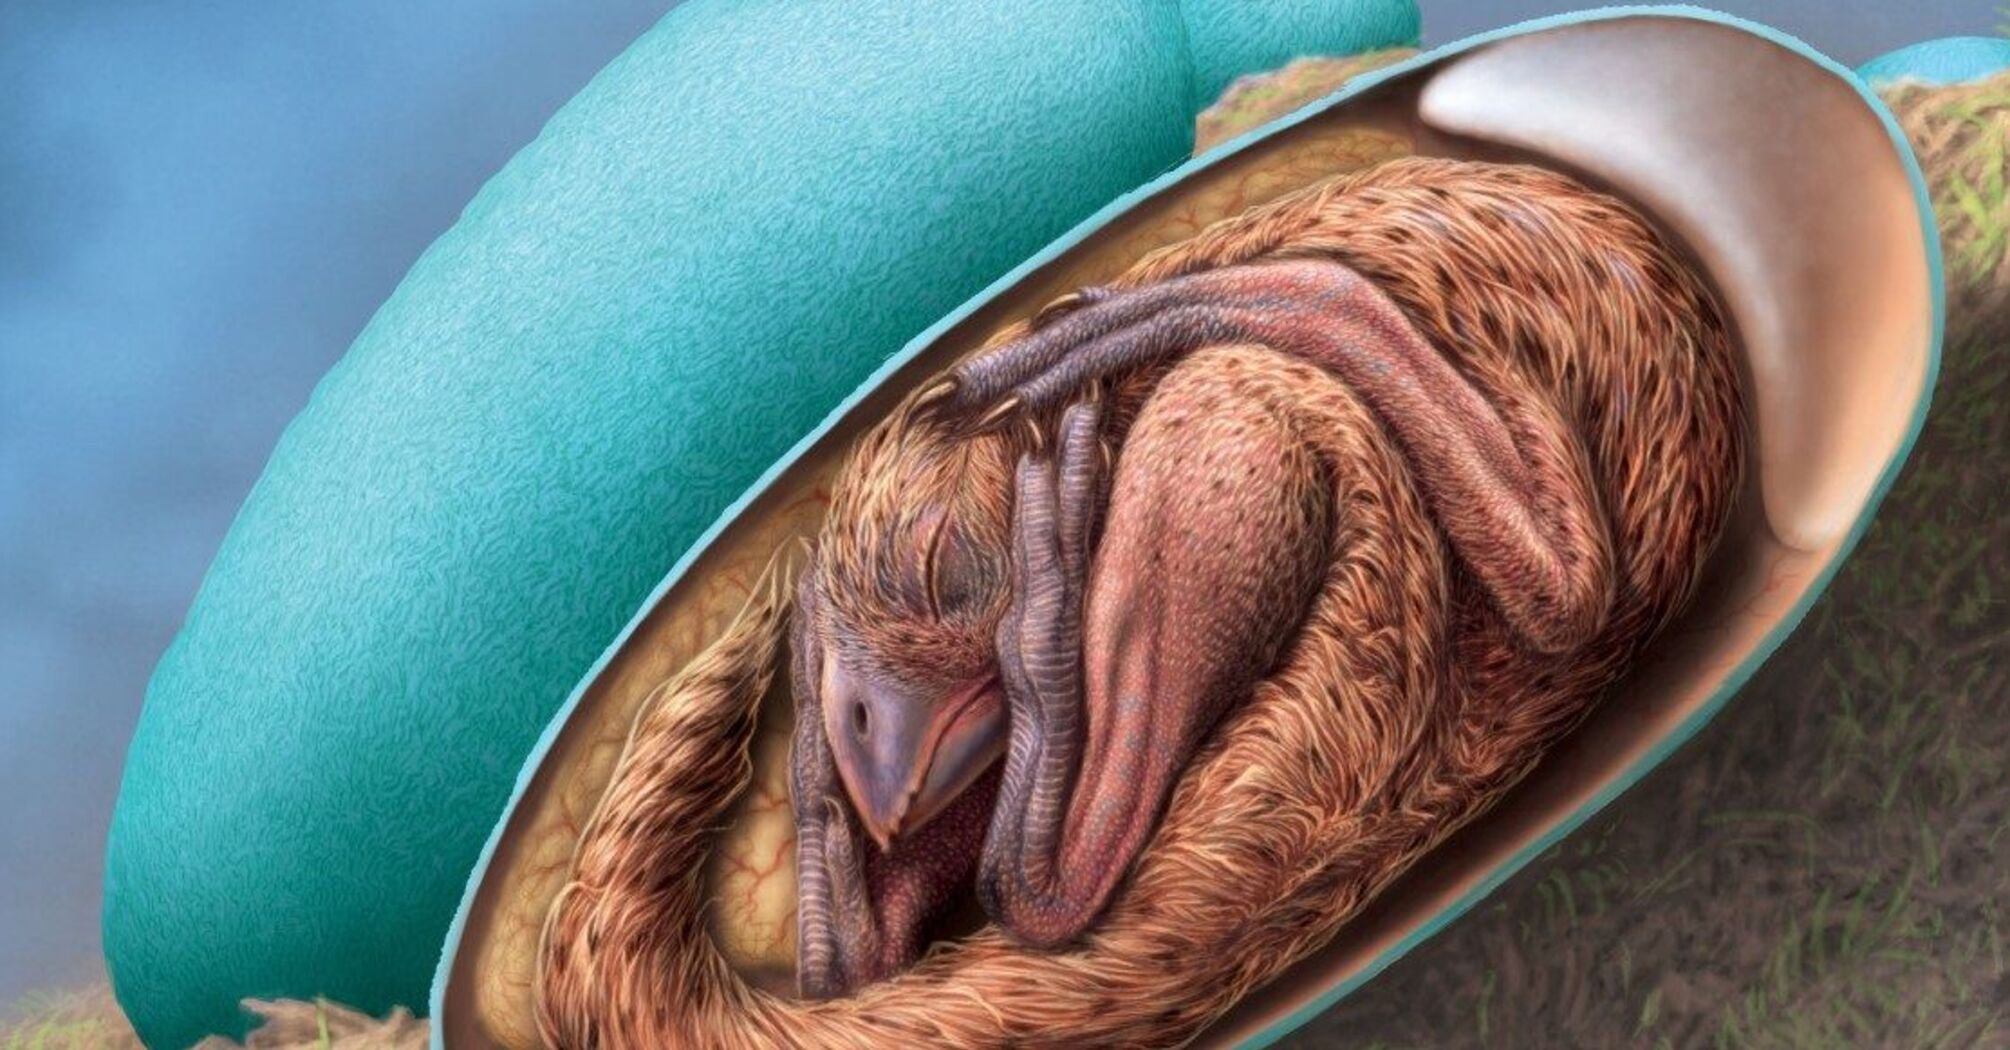 Лежал скрученный в яйце: в Китае нашли уцелевший эмбрион динозавра (фото)